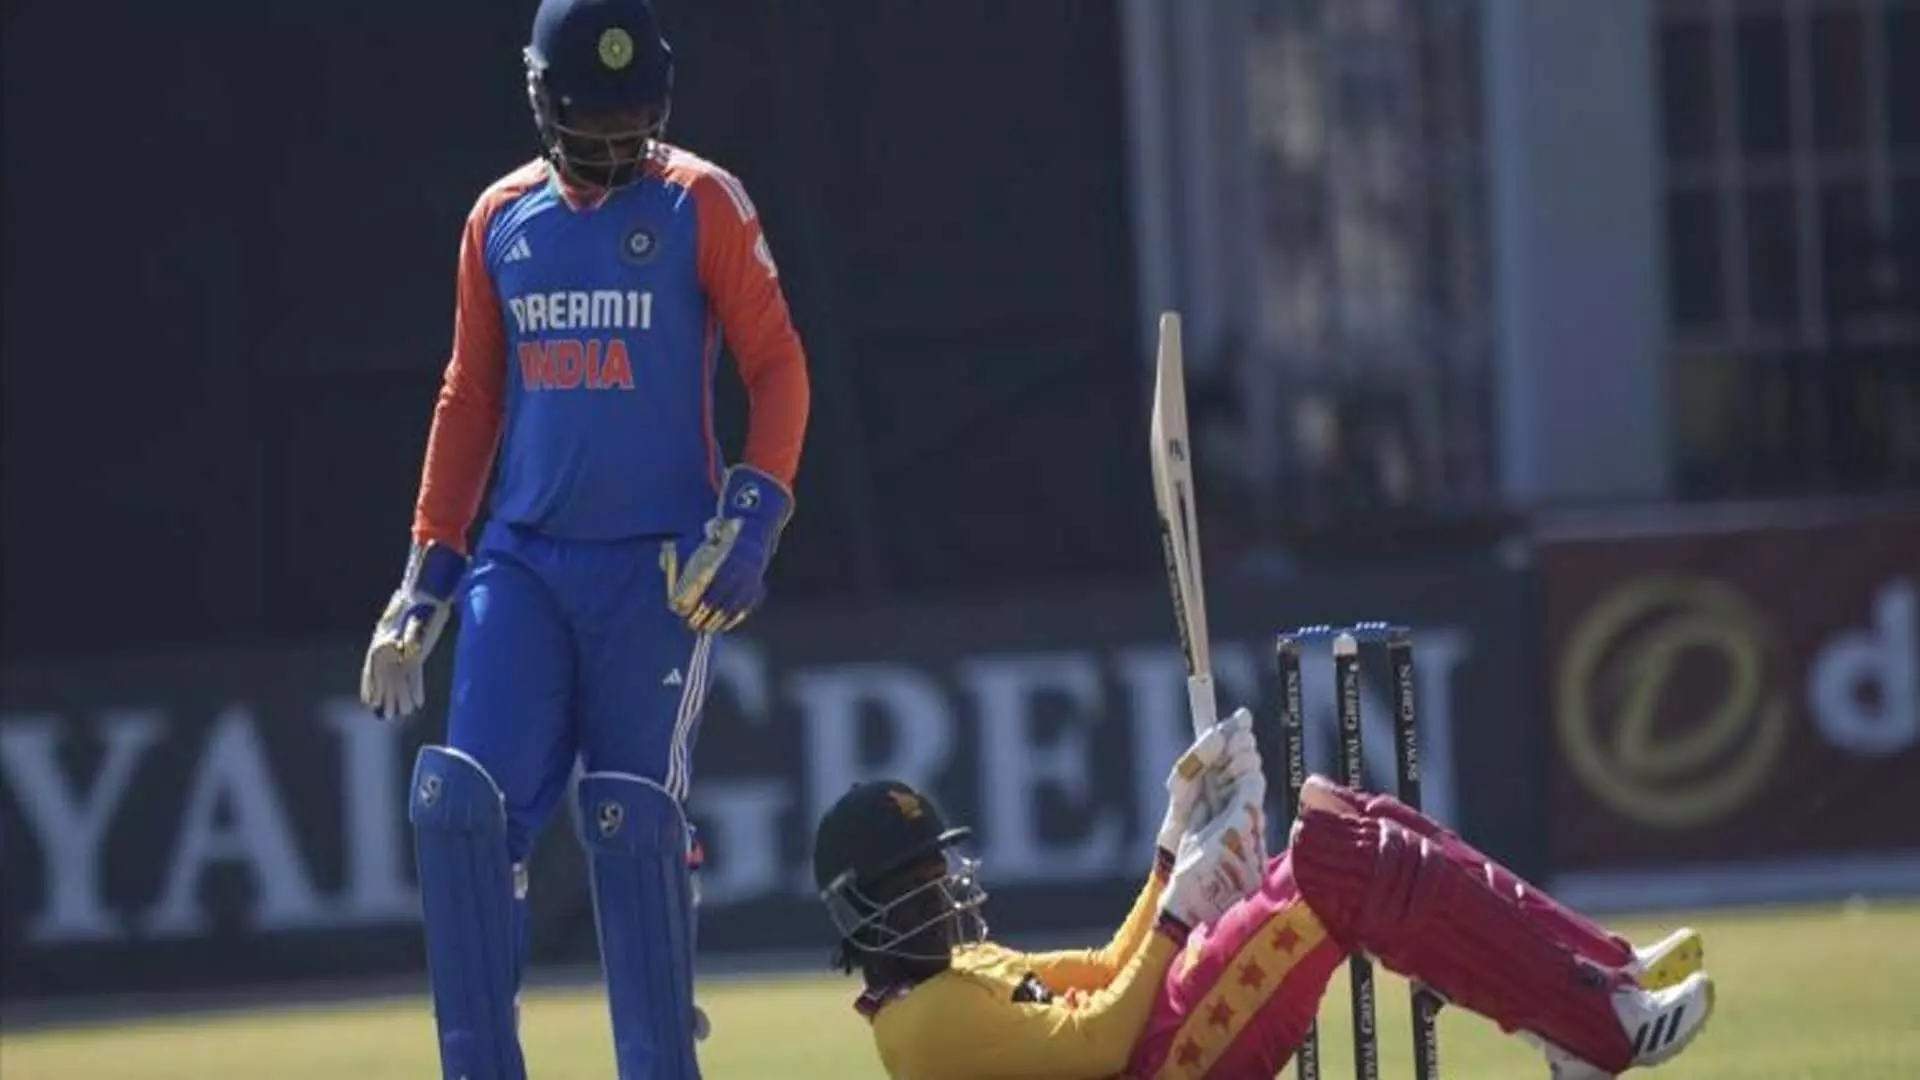 T20 match: भारत ने चौथे में जिम्बाब्वे को 10 विकेट से रौंदा, सीरीज में 3-1 की अजेय बढ़त हासिल की